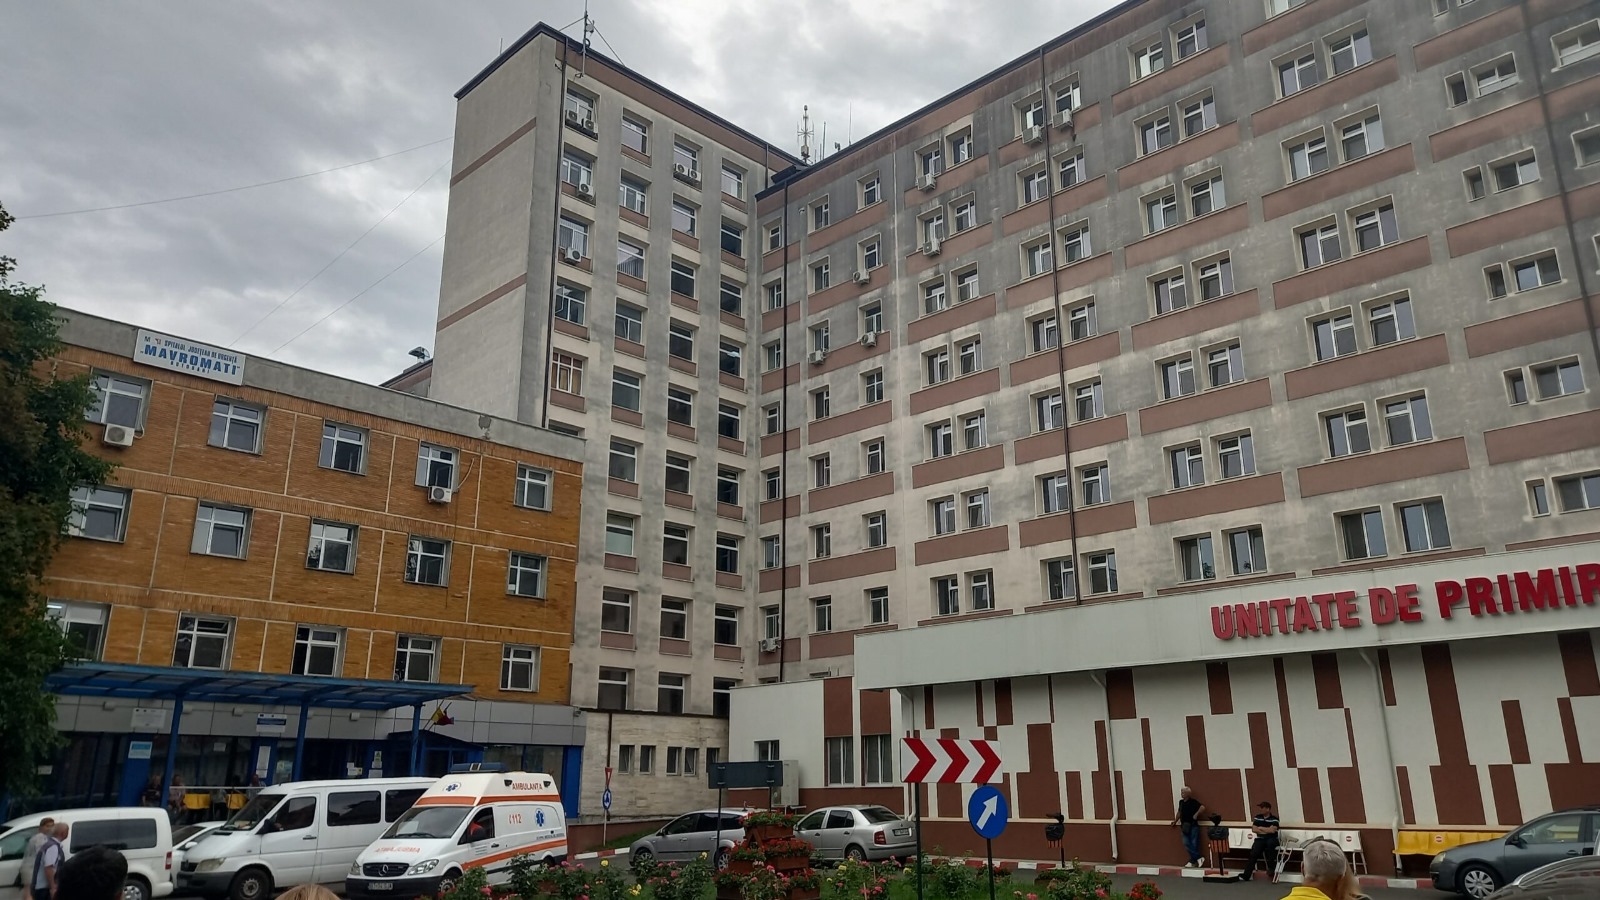 Spitalul de Urgenta Mavromati